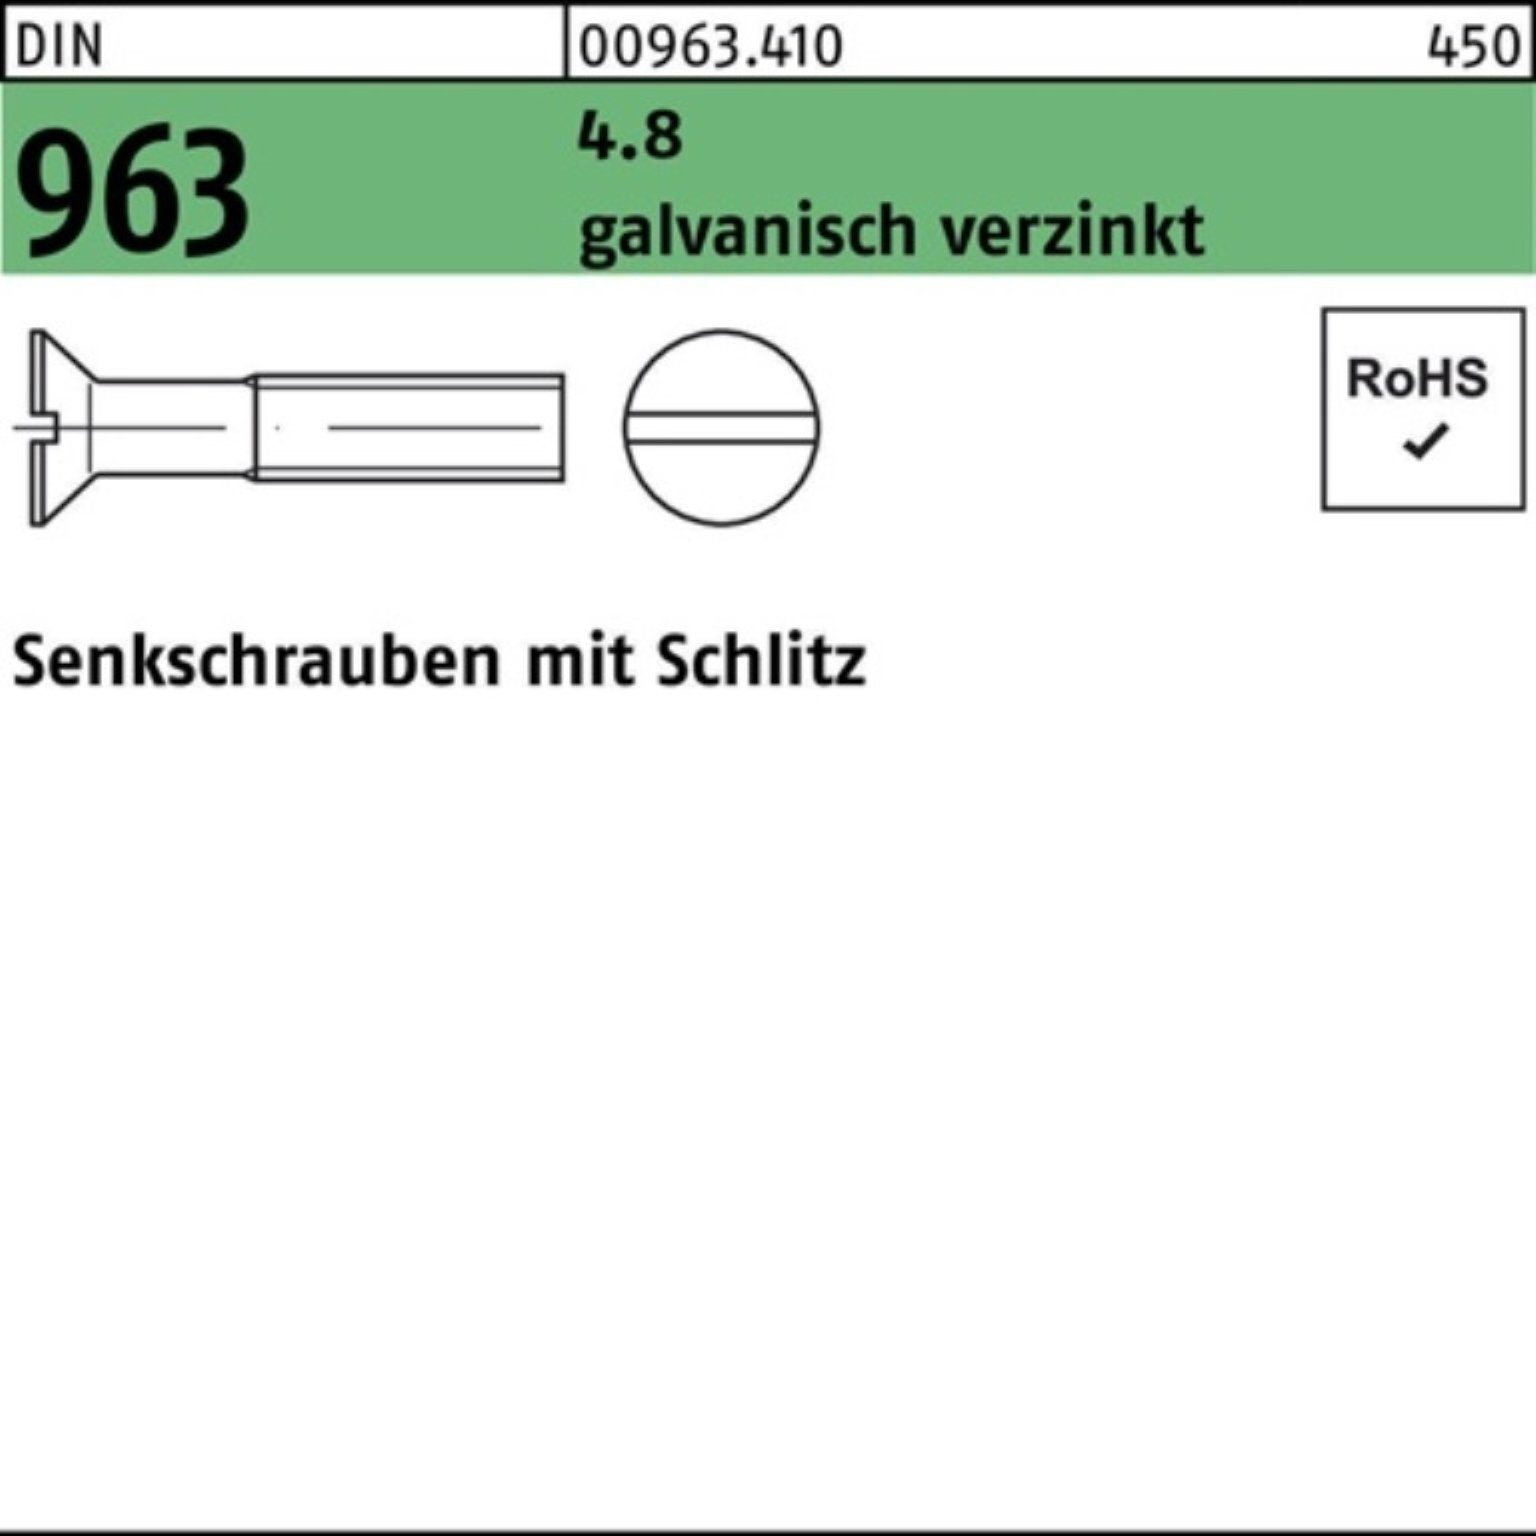 Reyher Senkschraube 2000er Pack 2000 4.8 galv.verz. 963 8 M4x Senkschraube Schlitz St DIN